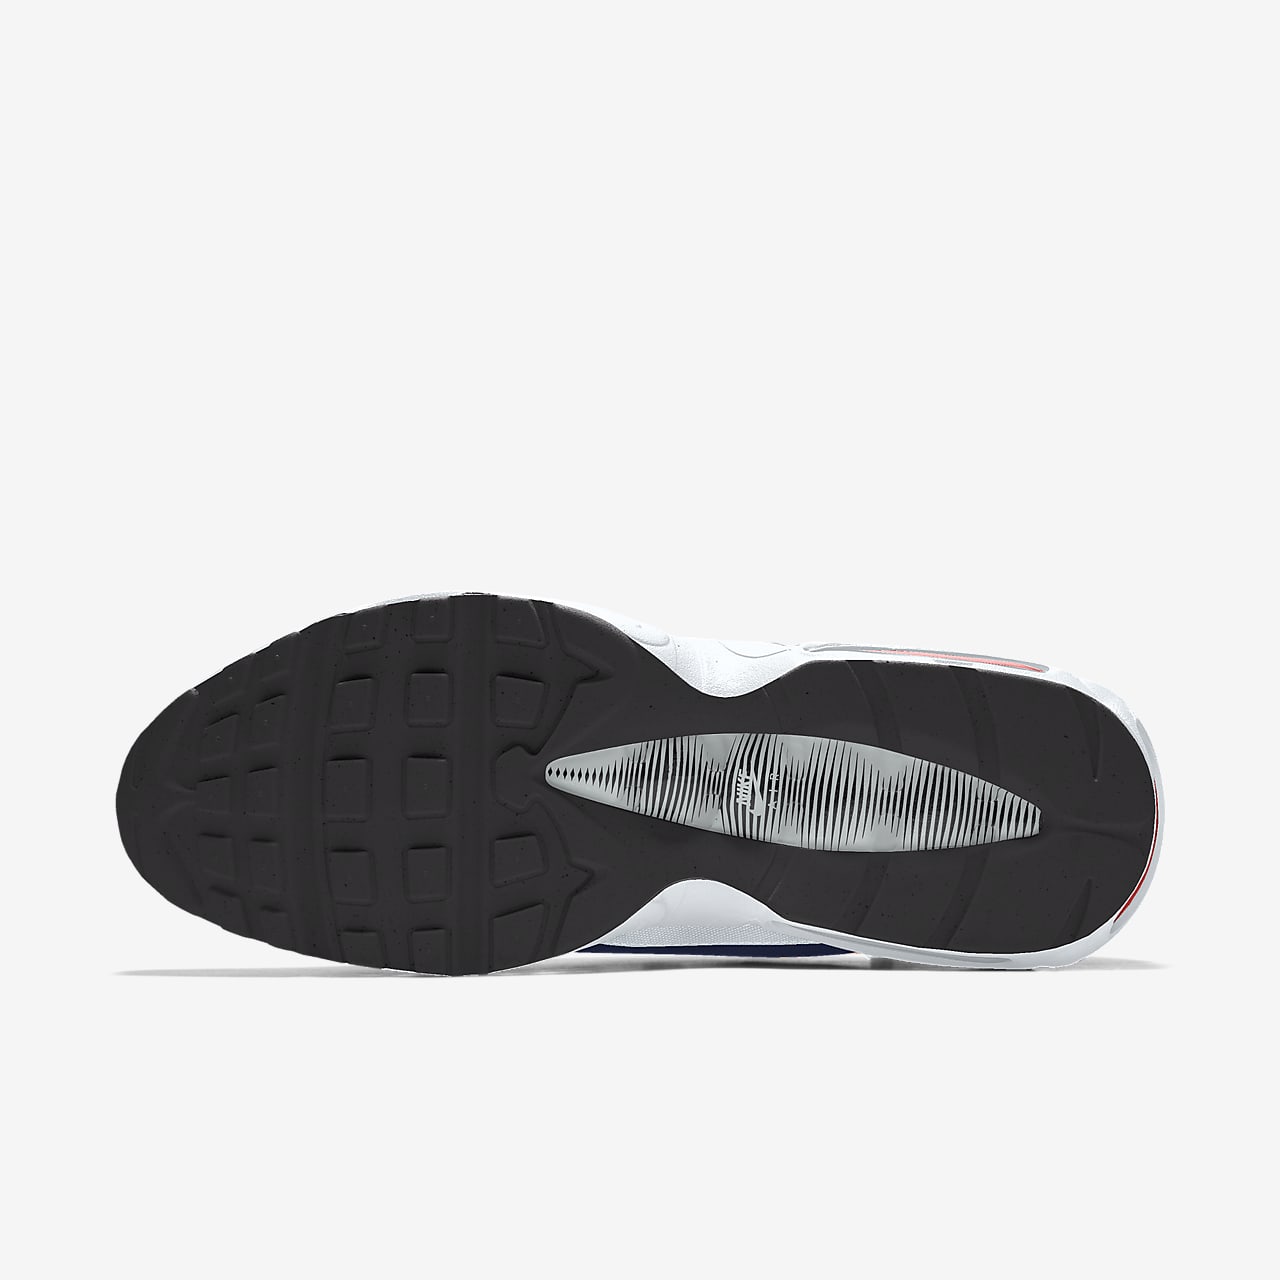 Chaussure Nike Air Max 95 pour homme. Nike LU